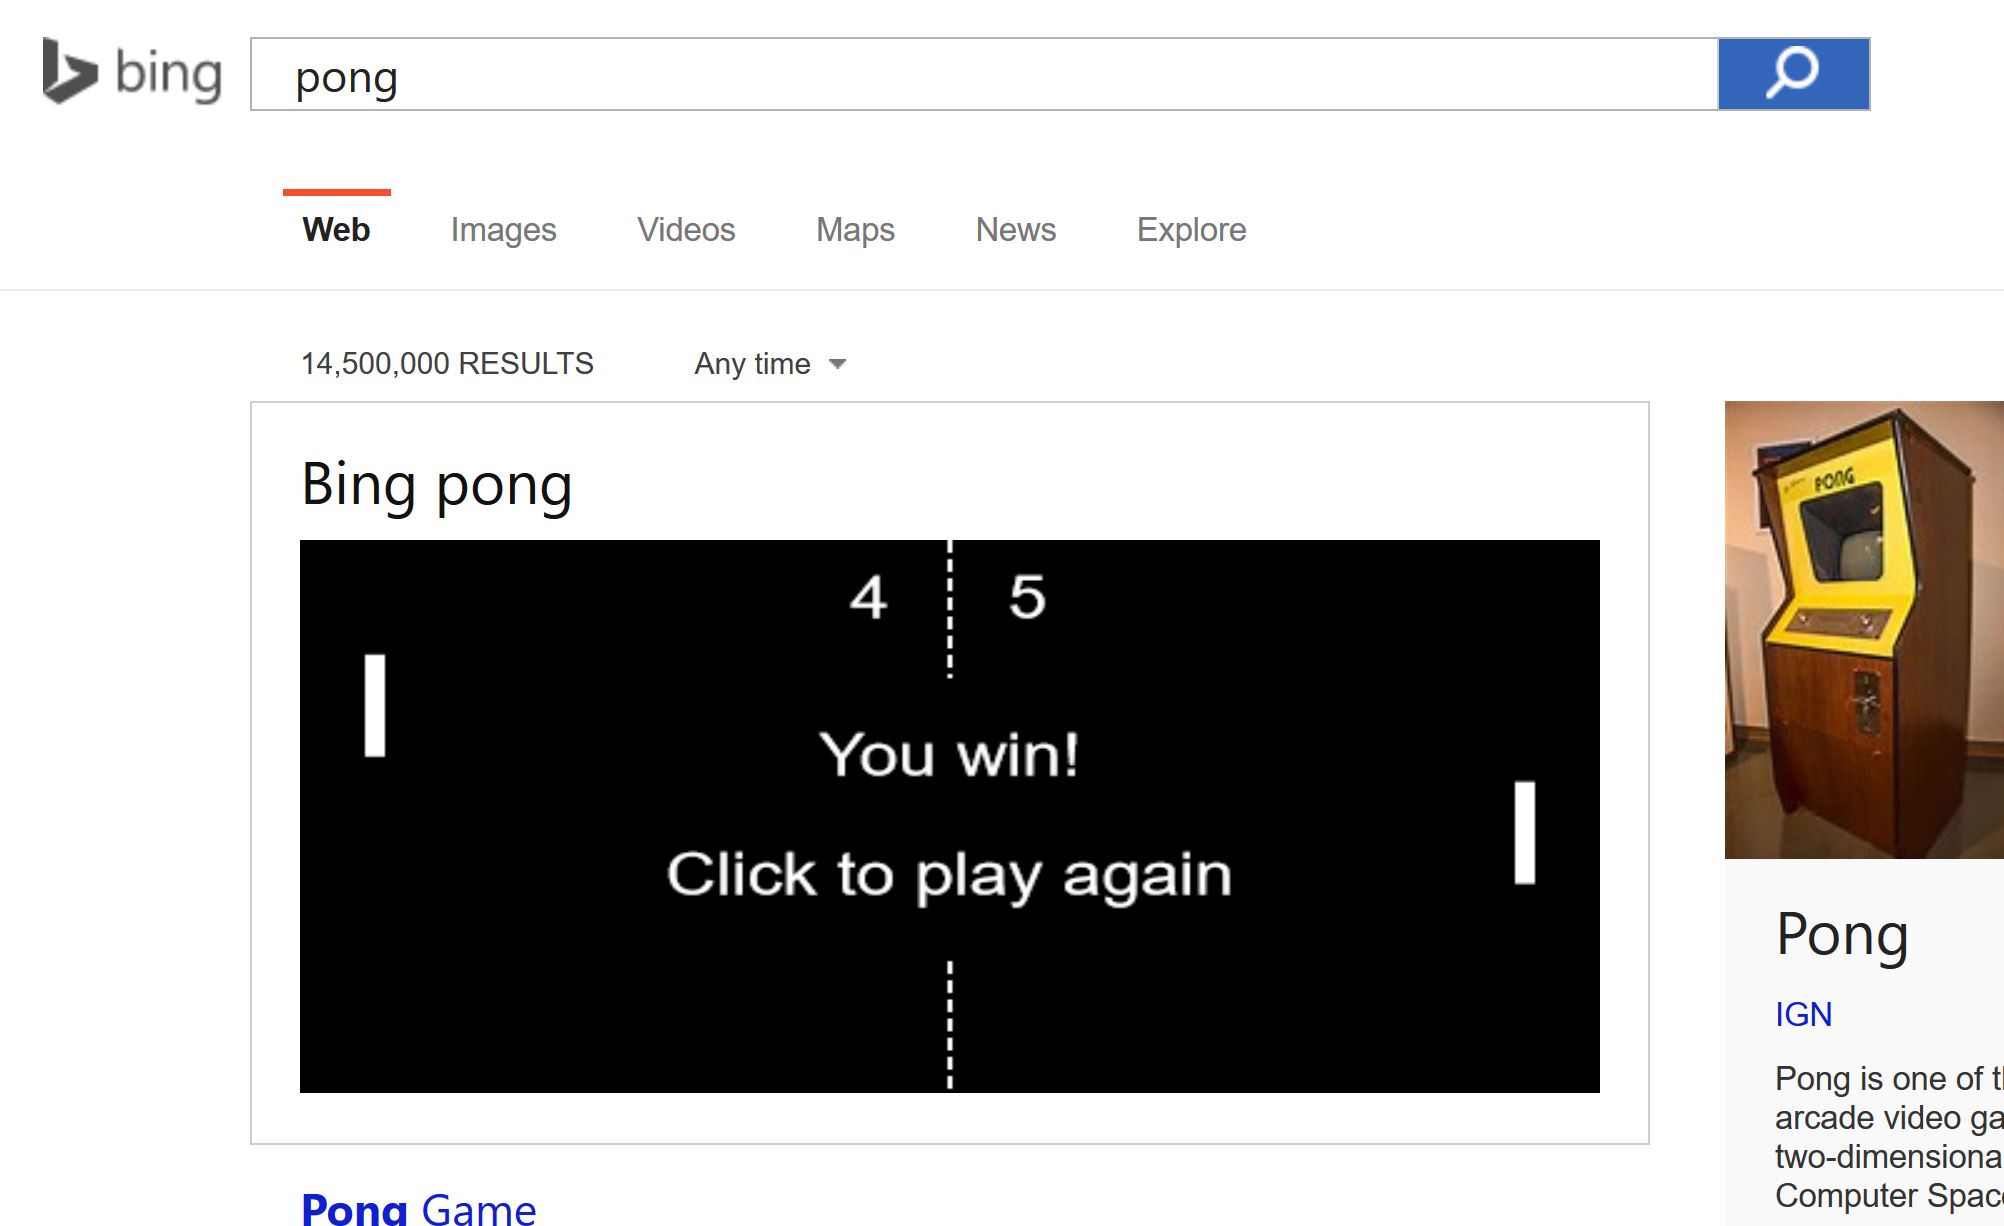 Bing Pong